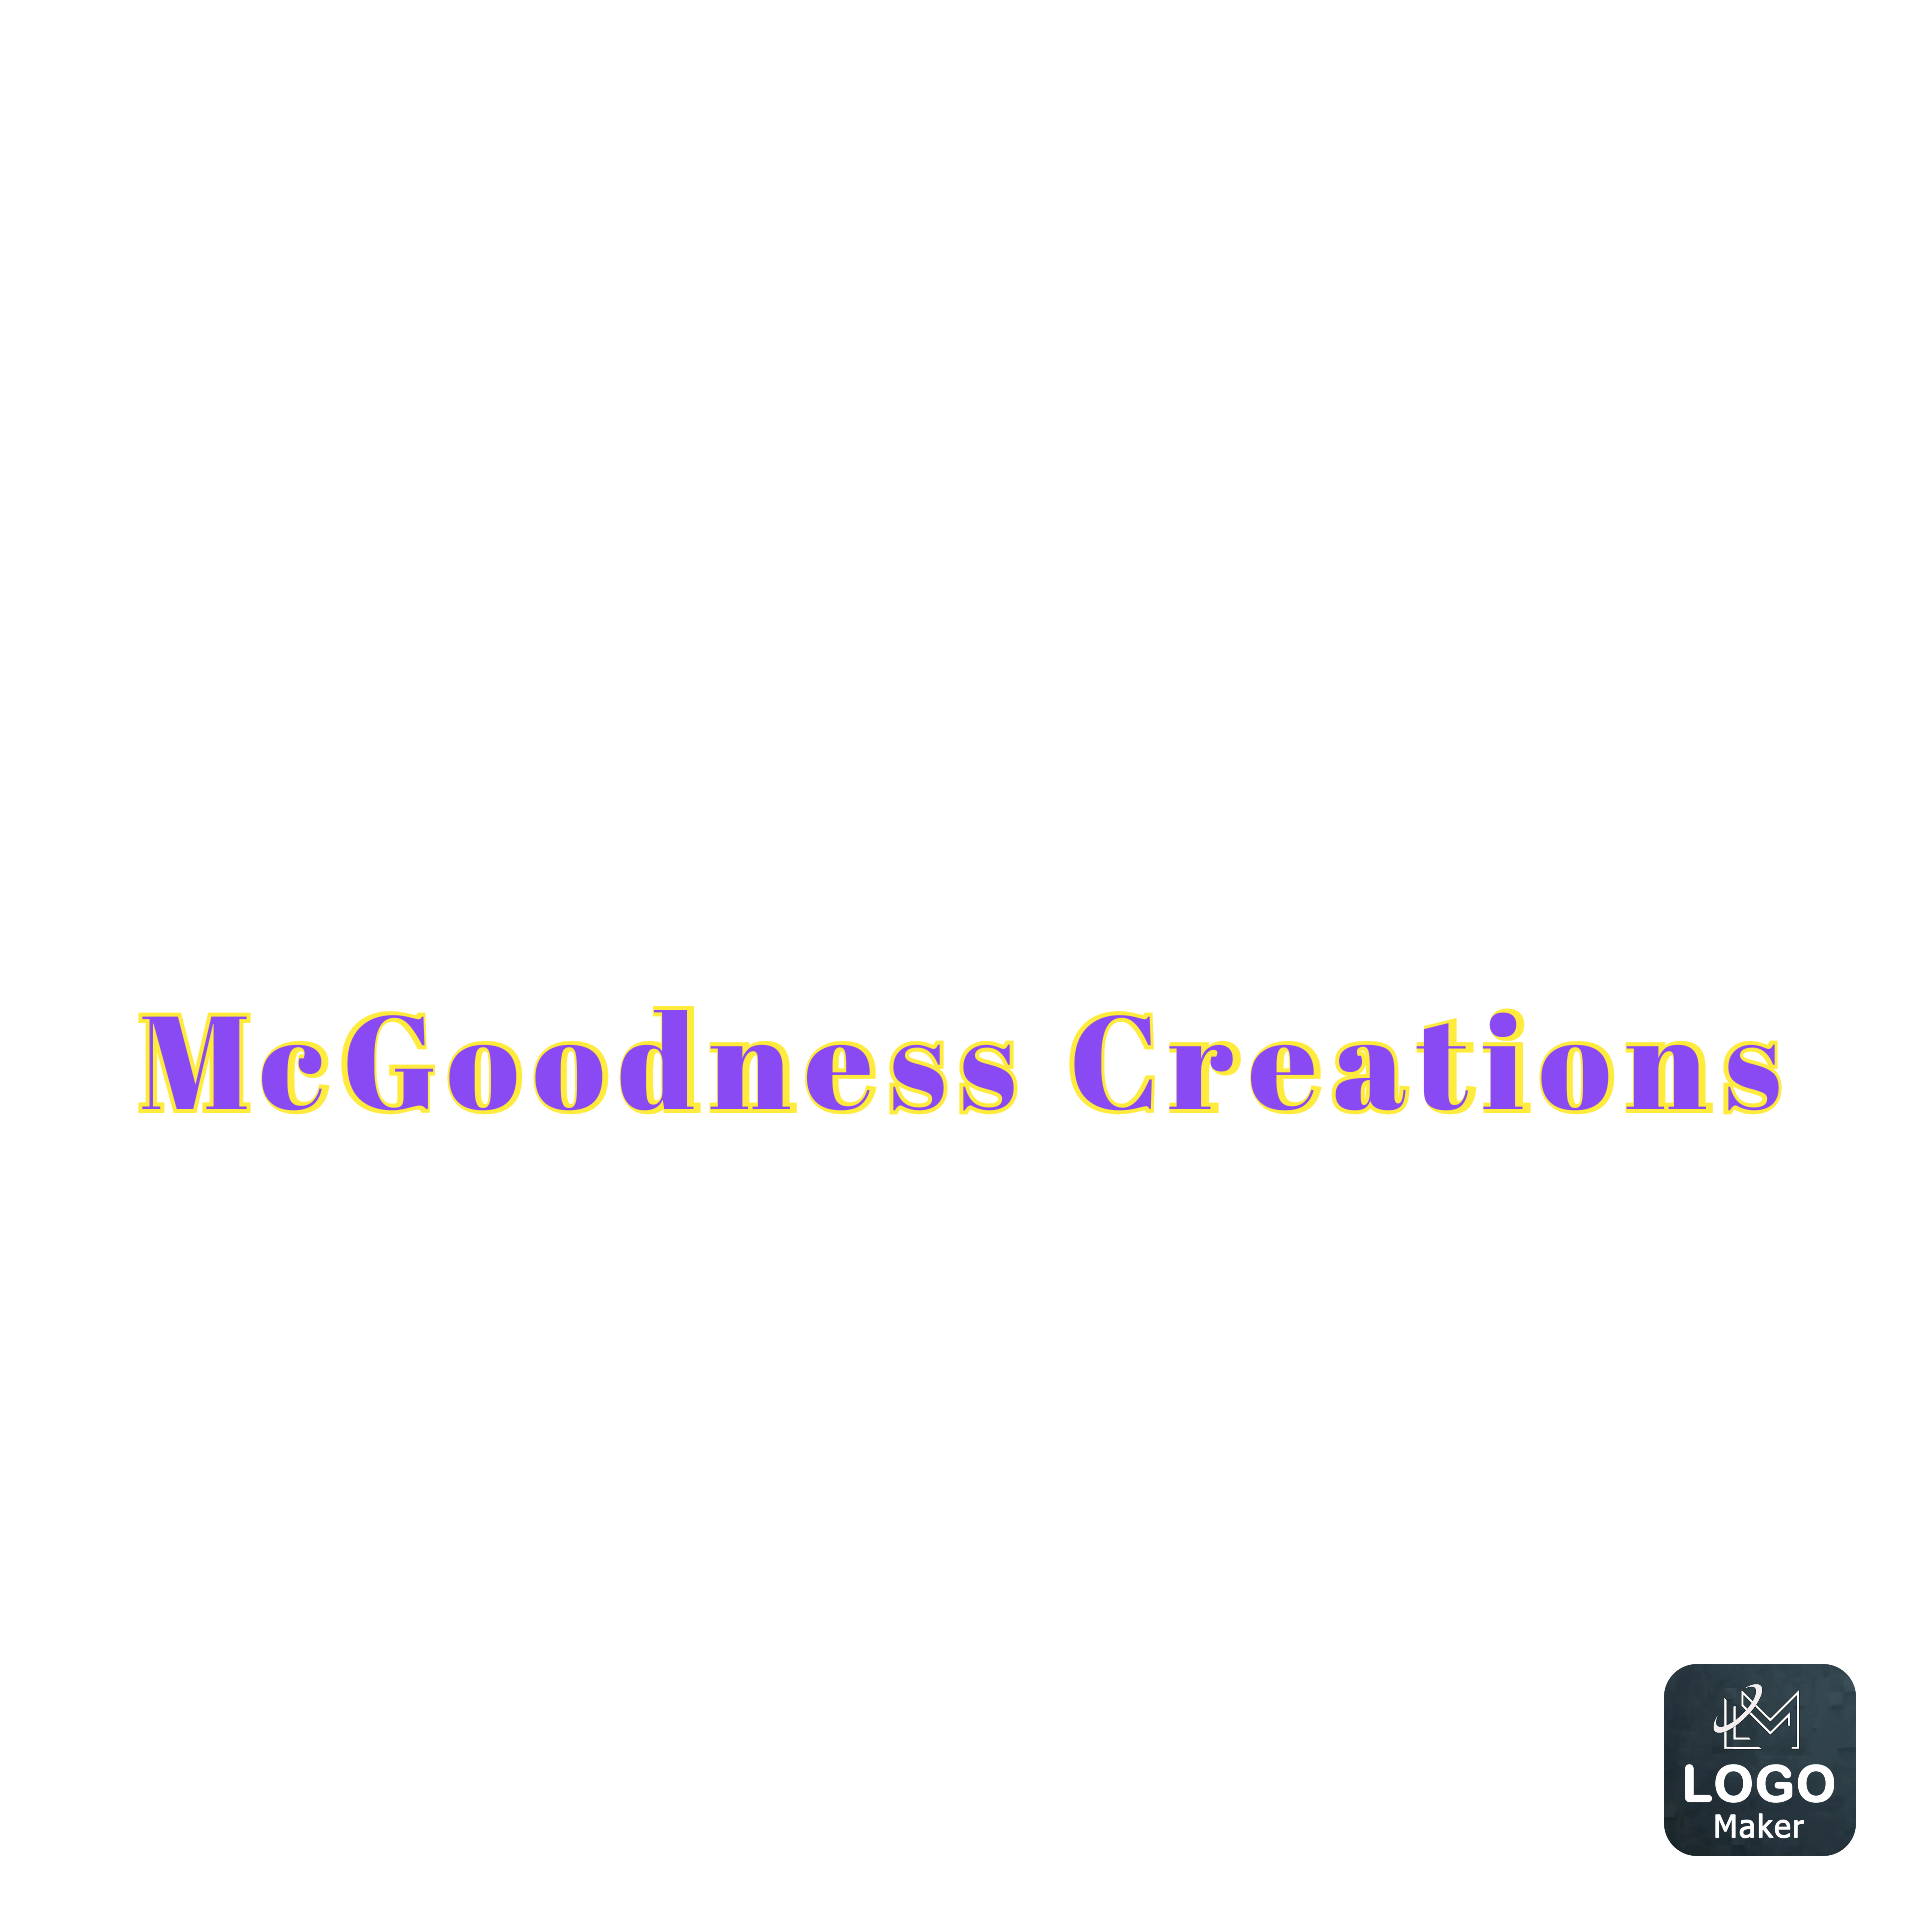 McGoodness Creations